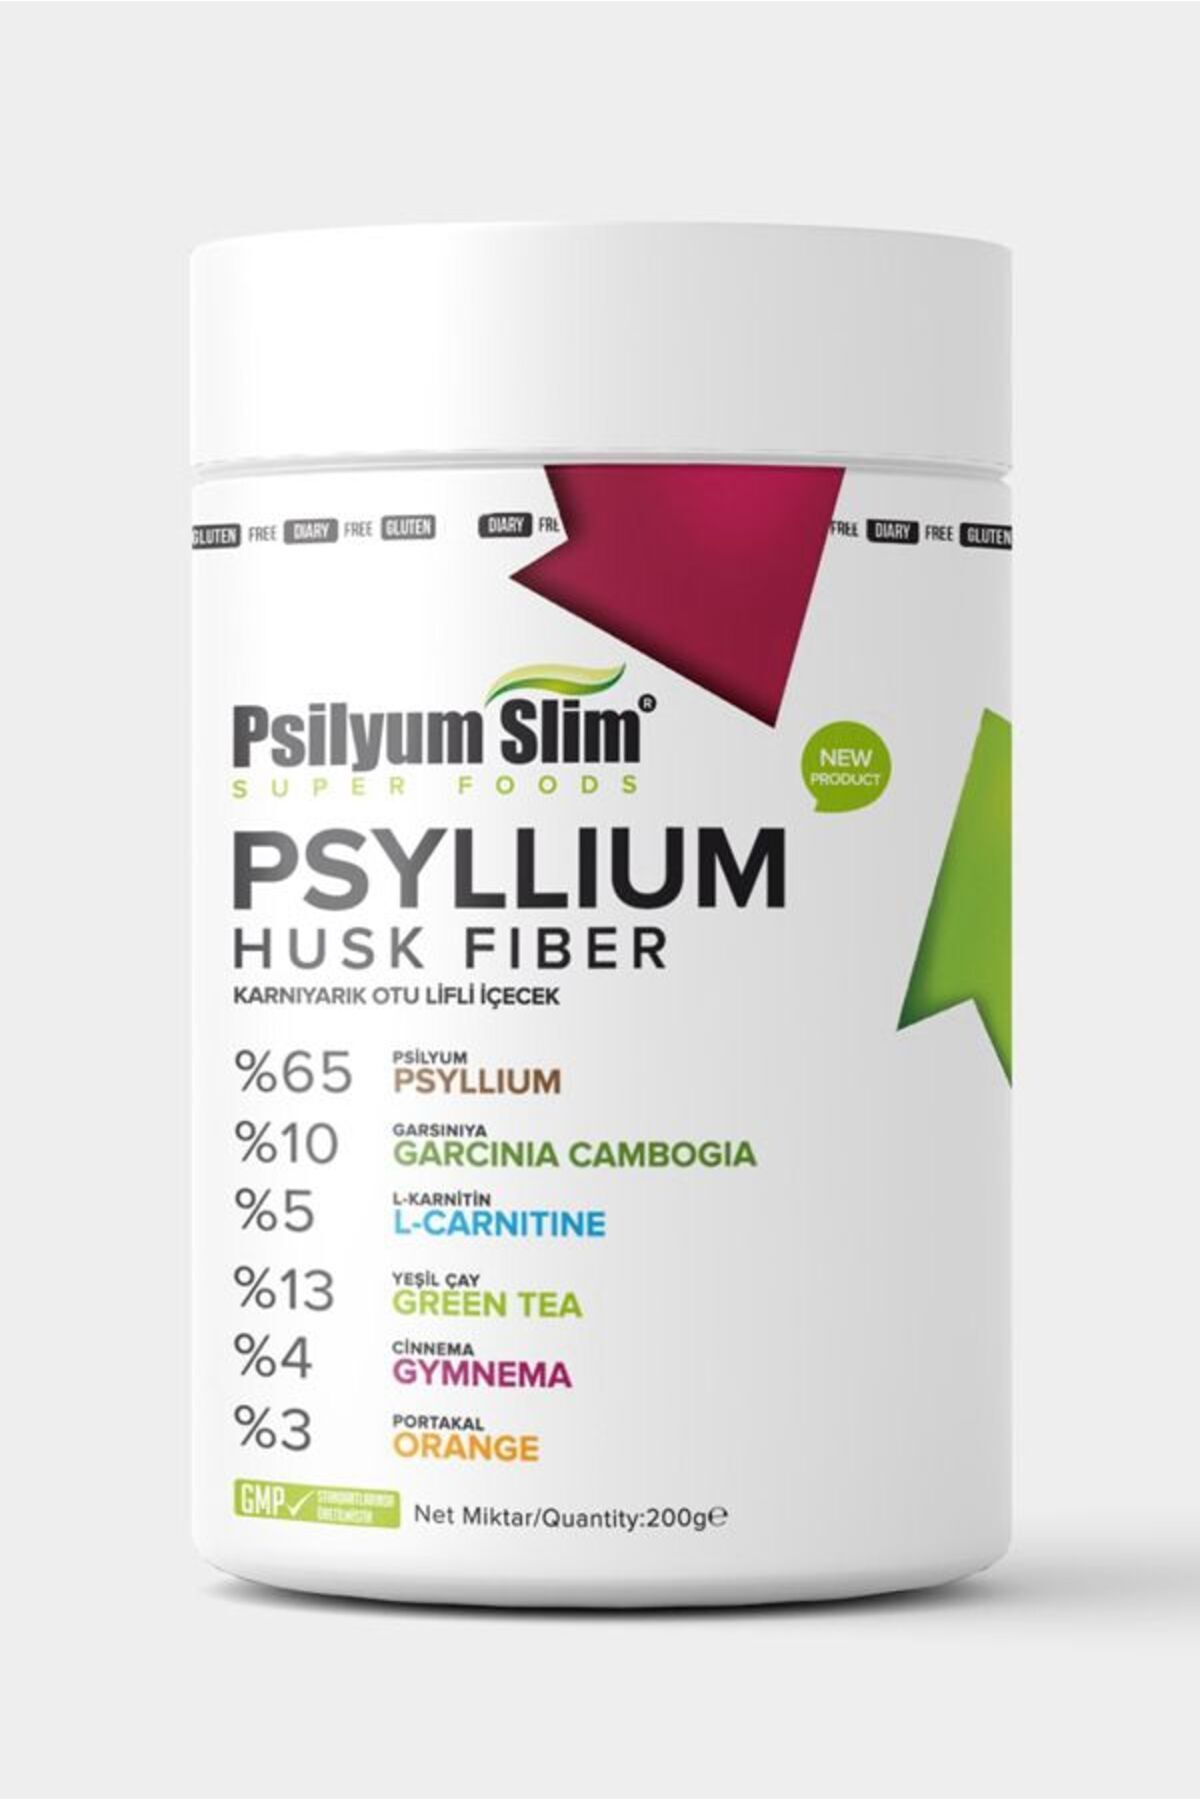 psilyum slim Detox Psyllium Karnıyarık Otu Tozu Diyet Form Zayıflama Detoks Çayı